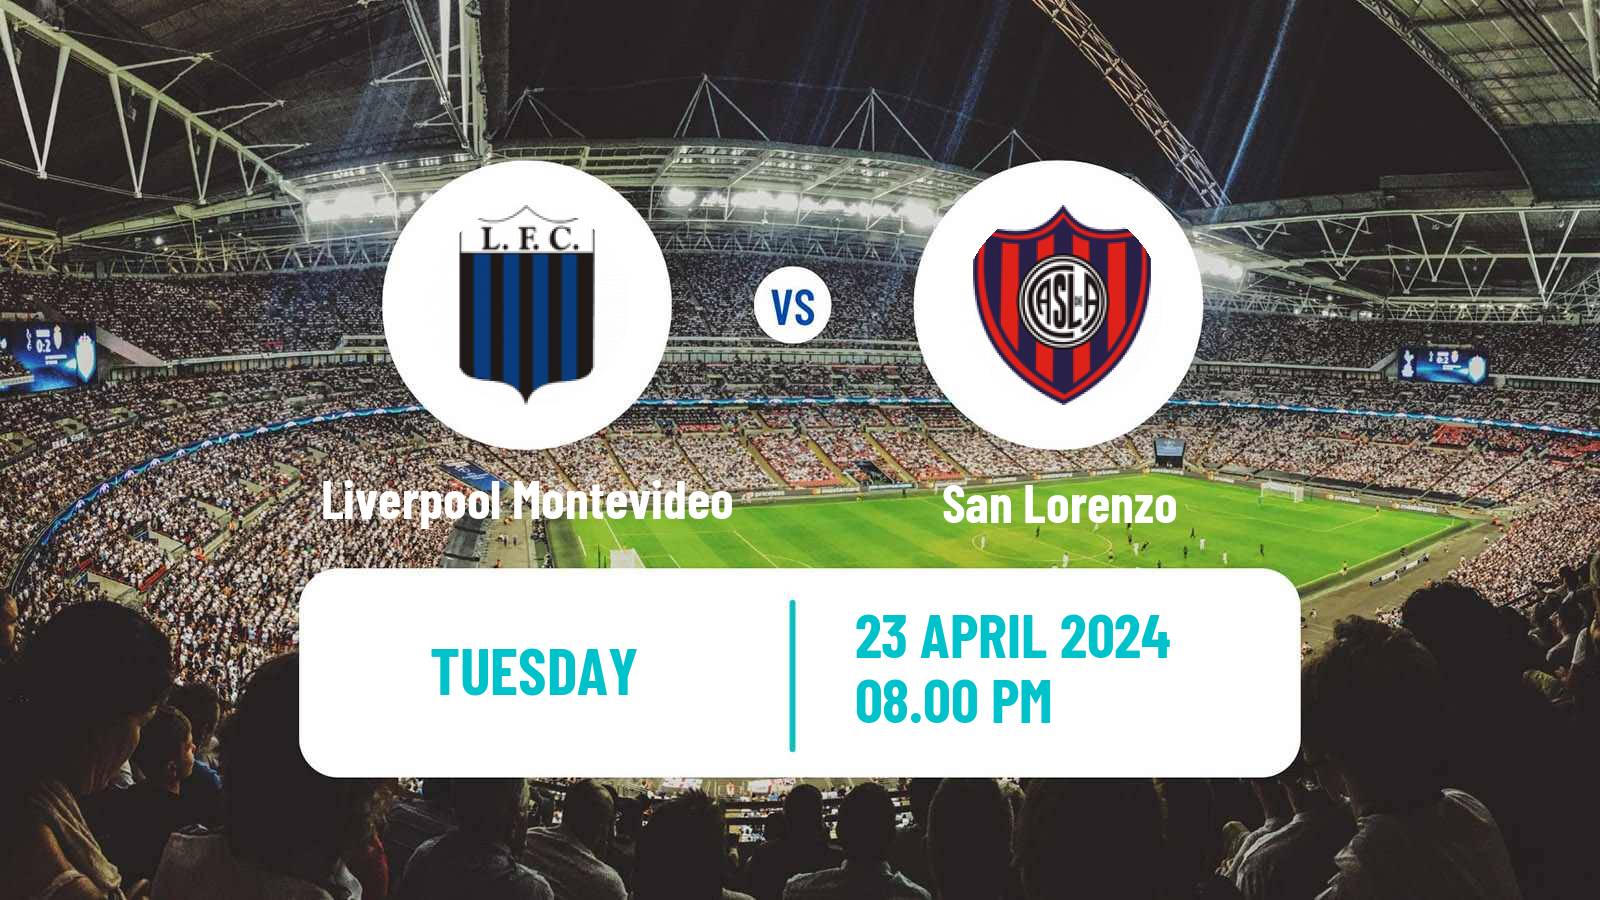 Soccer Copa Libertadores Liverpool Montevideo - San Lorenzo